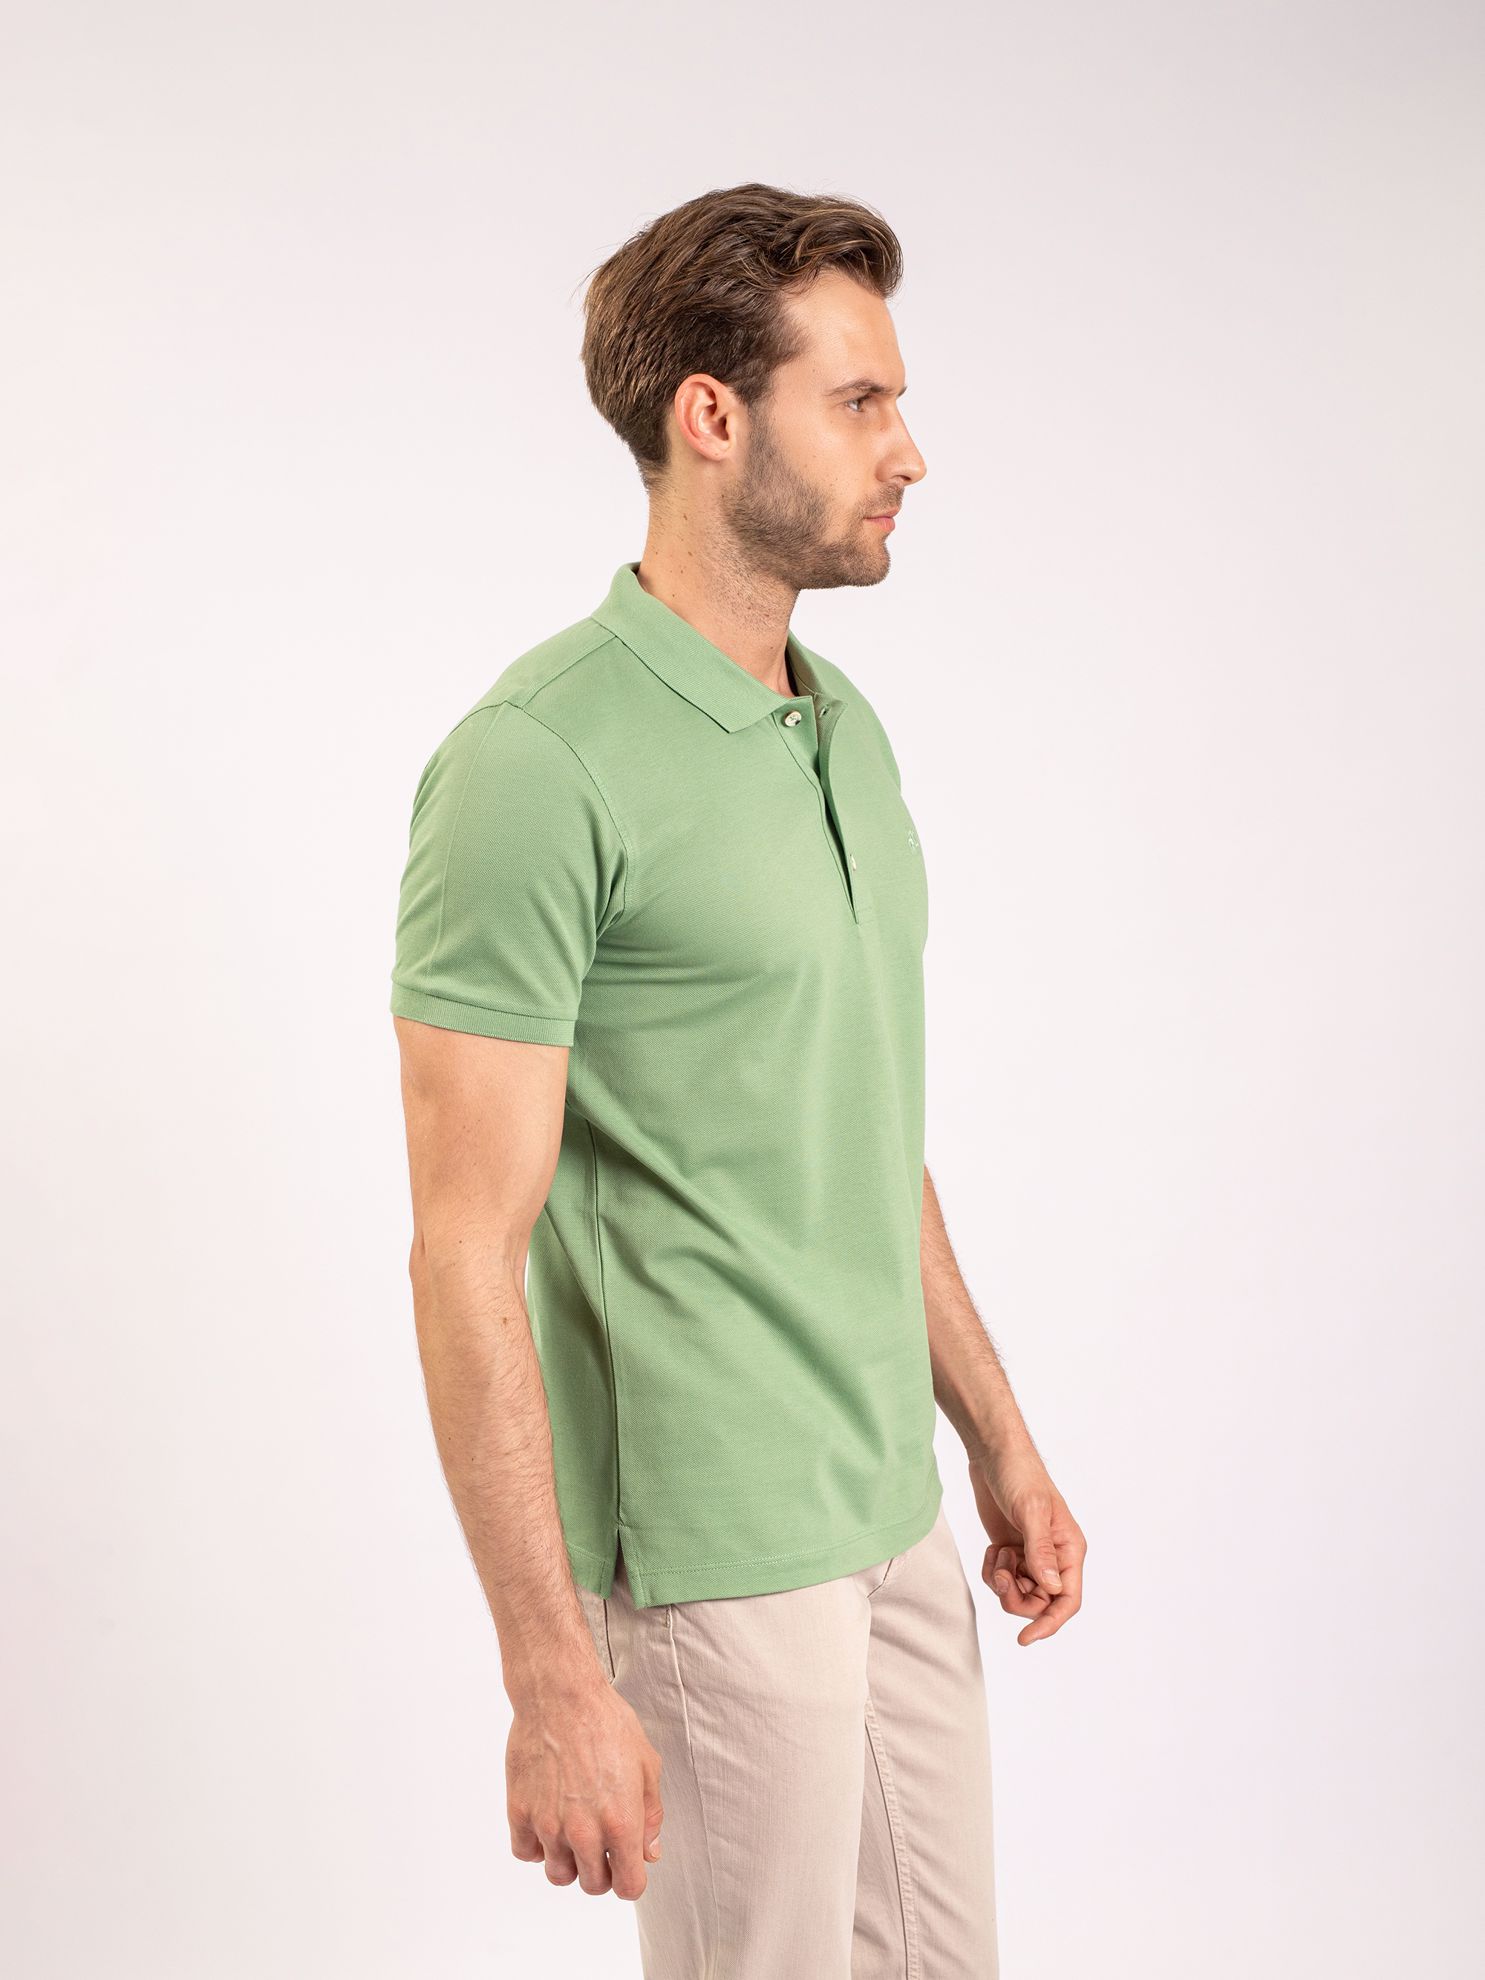 Karaca Erkek Slim Fit Polo Yaka Tişört-Çağla Yeşili. ürün görseli